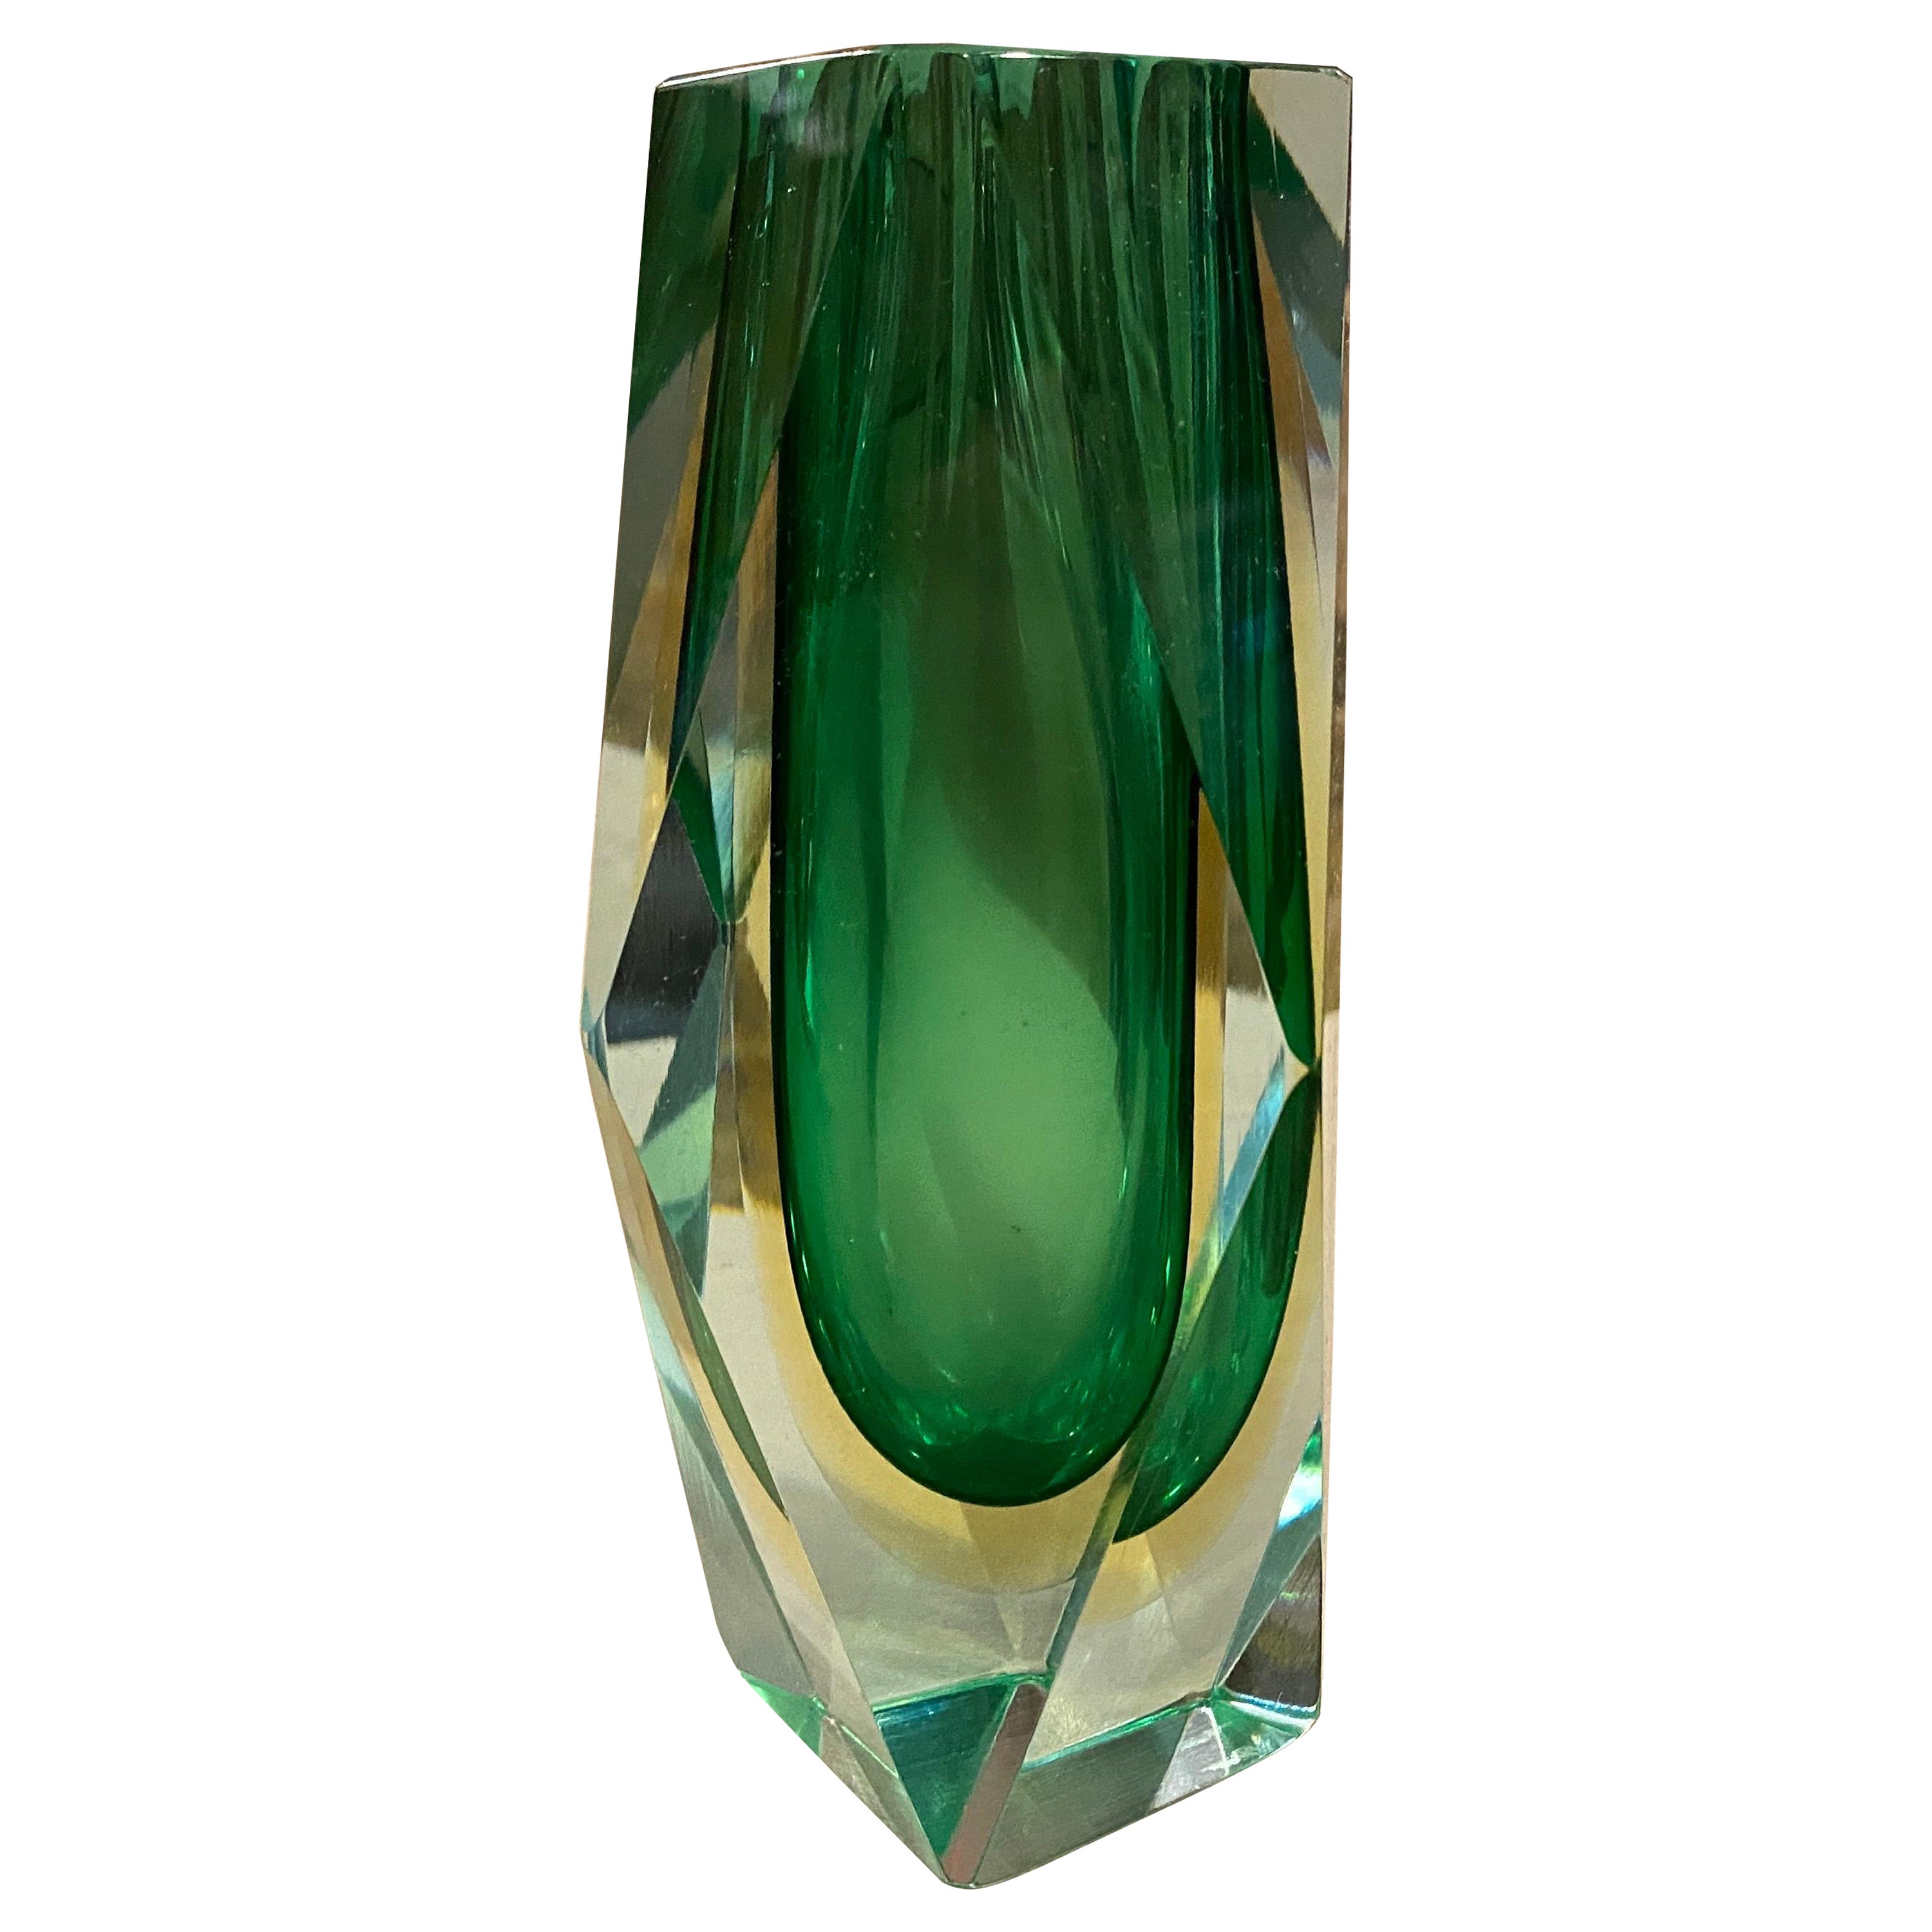 Ce vase en verre de Murano vert et jaune a été conçu et fabriqué en Italie dans les années 70. Ce style aux multiples facettes était très populaire à Murano à cette époque. Il s'agit d'un superbe exemple de l'artisanat et du design italiens de cette